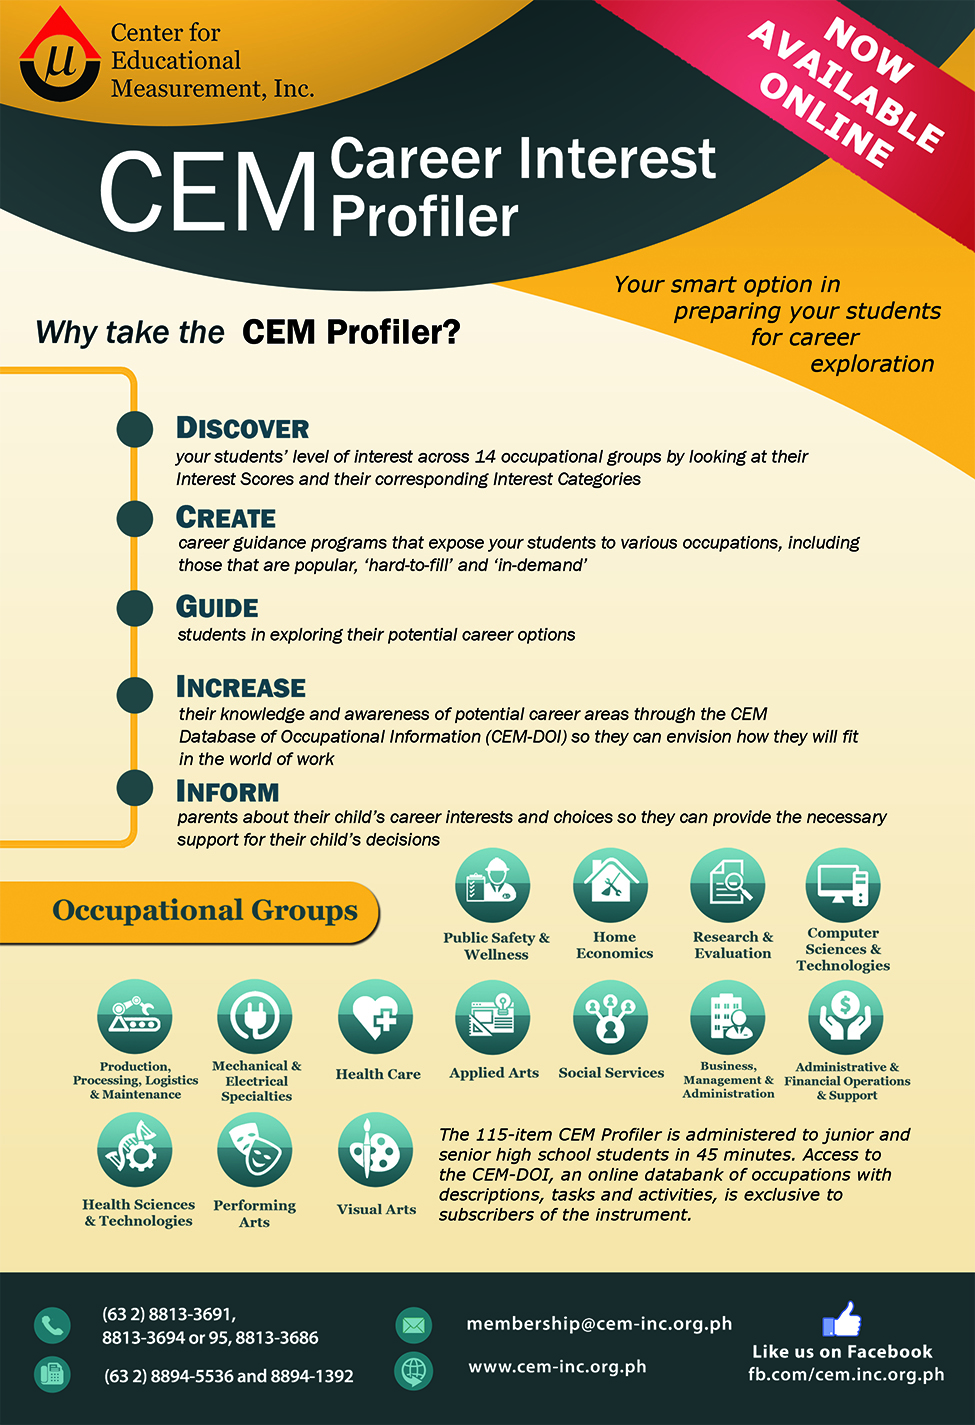 CEM Career Interest Profiler (CEM Profiler)